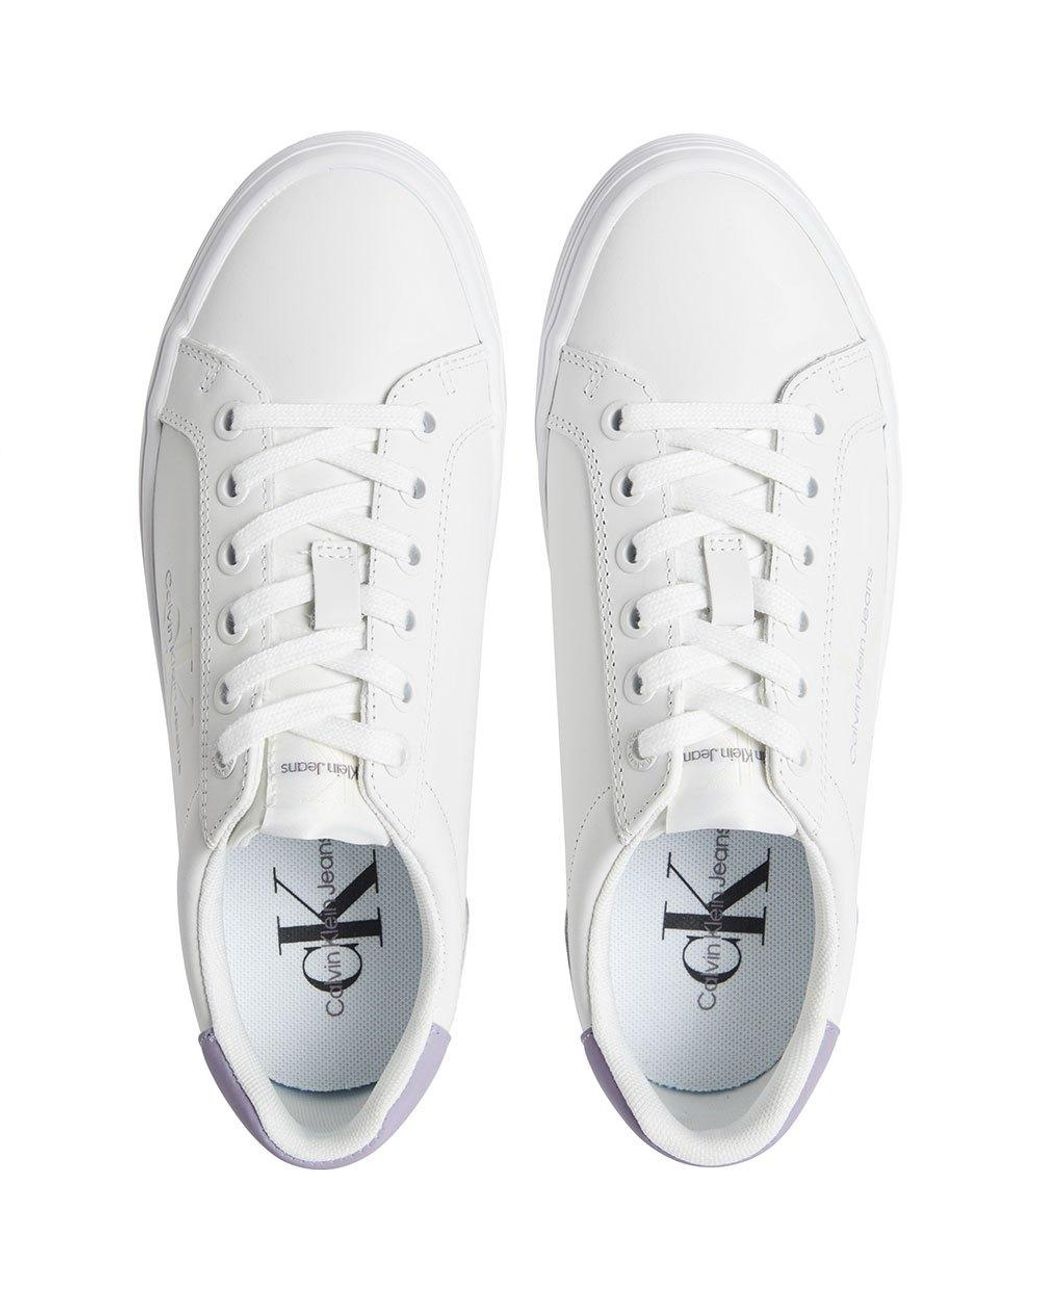 social Regulering skadedyr Calvin Klein Vulc Flatform Laceup Pearl Trainers in White | Lyst